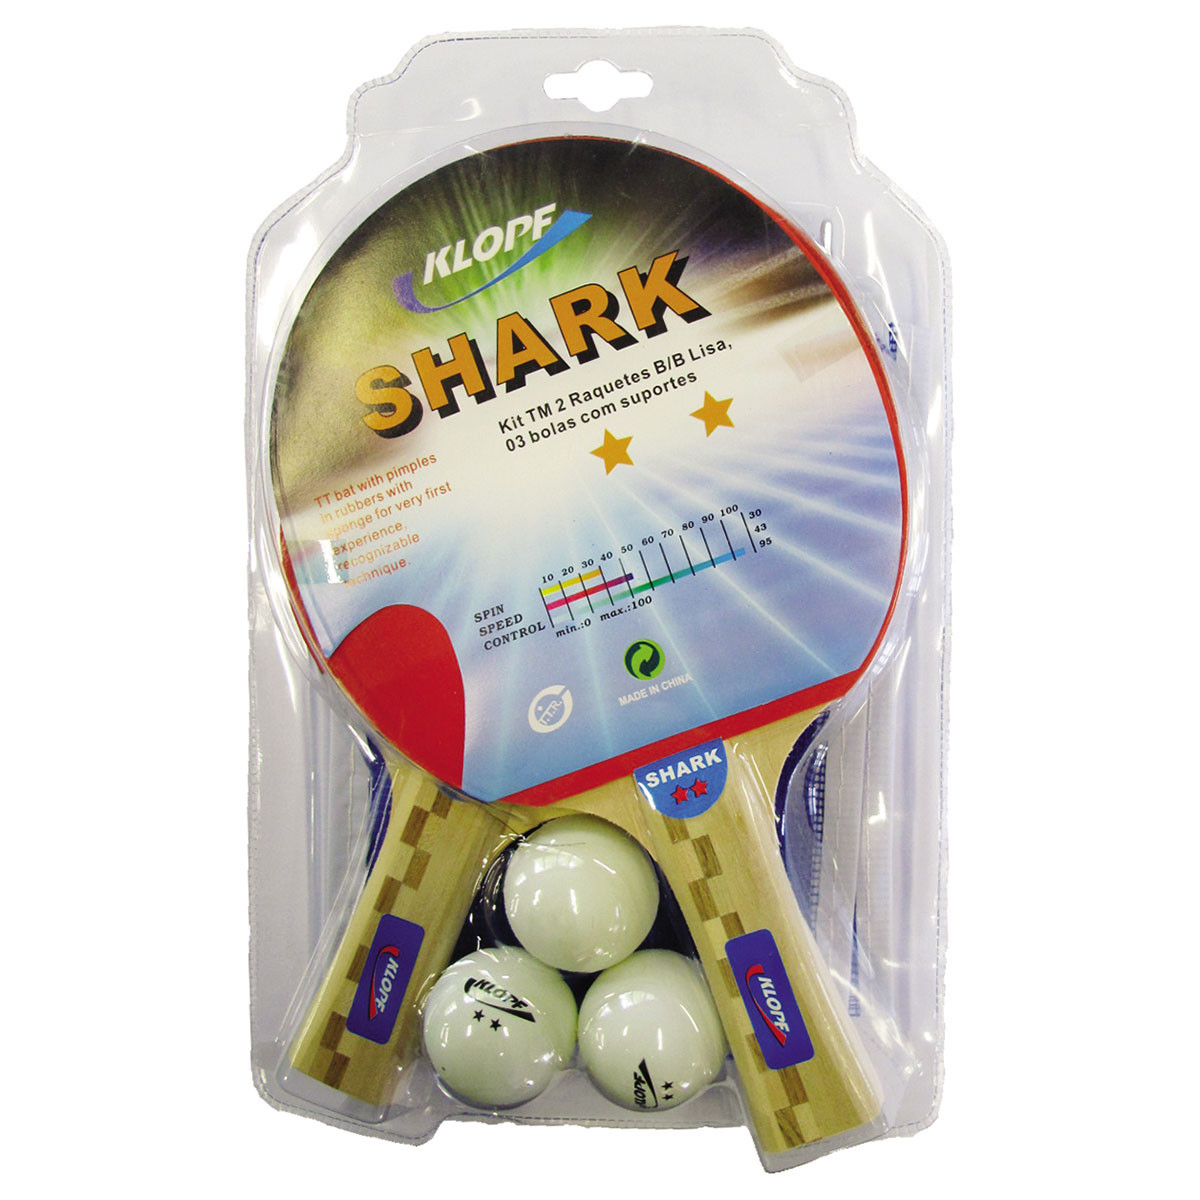 Ping Pong jogo completo com 2 raquetes e 3 bolinhas